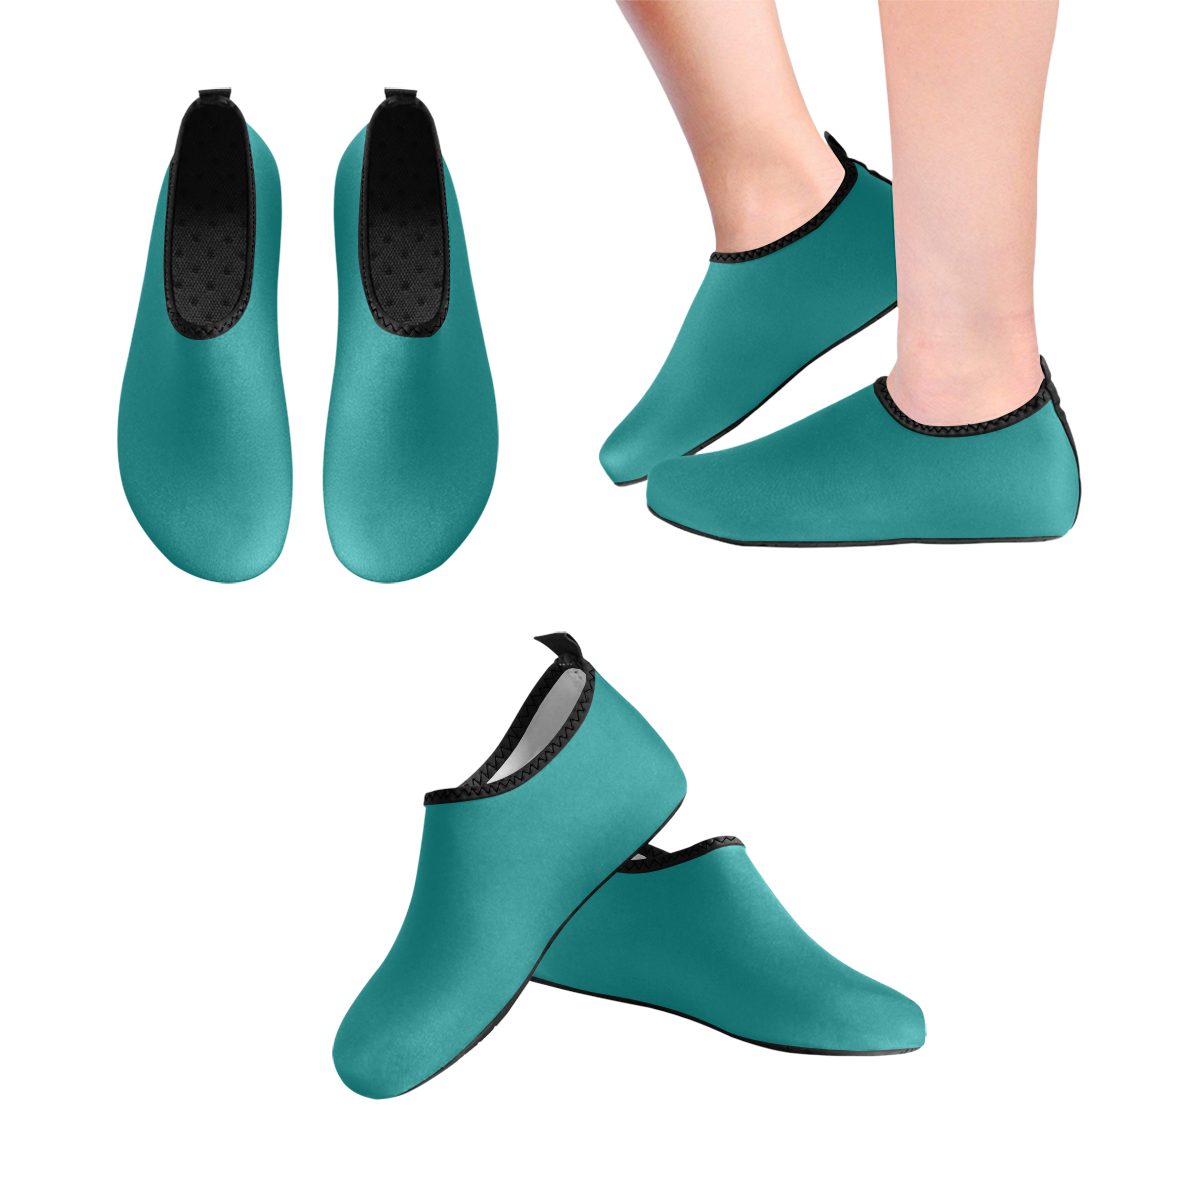 color teal Kids' Slip-On Water Shoes (Model 056)